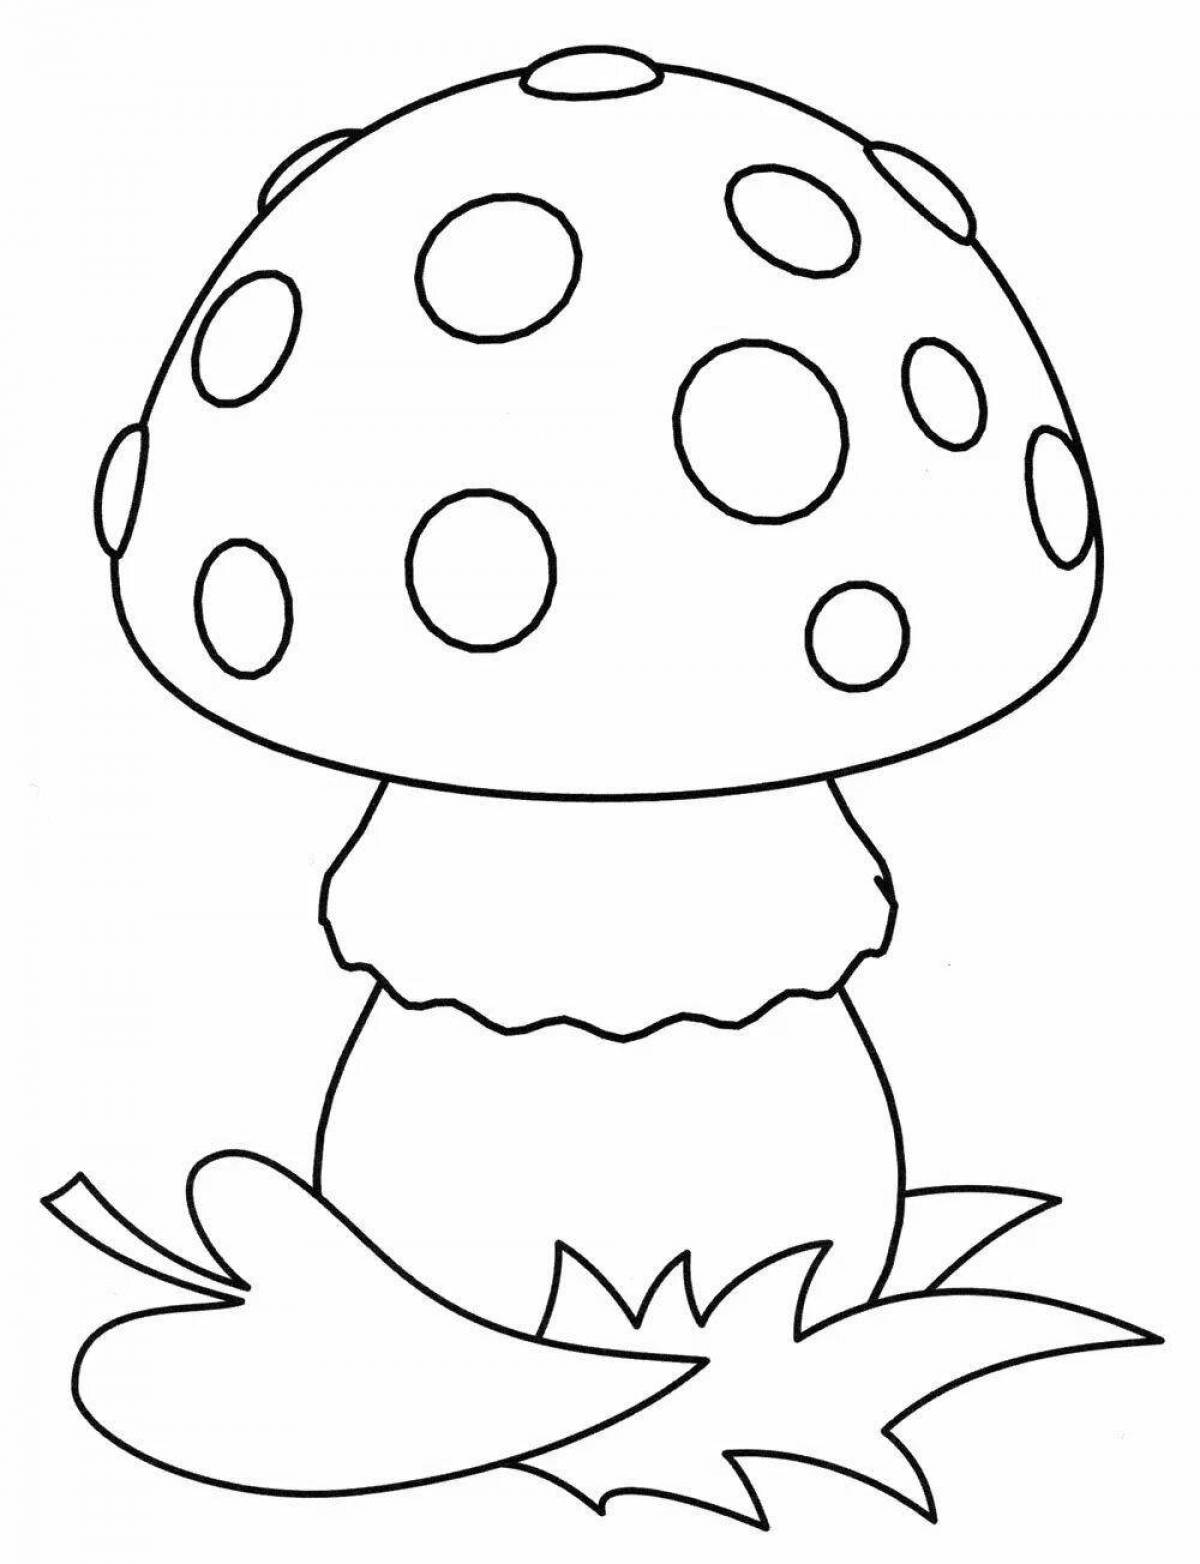 Mystical drawing of mushroom fly agaric